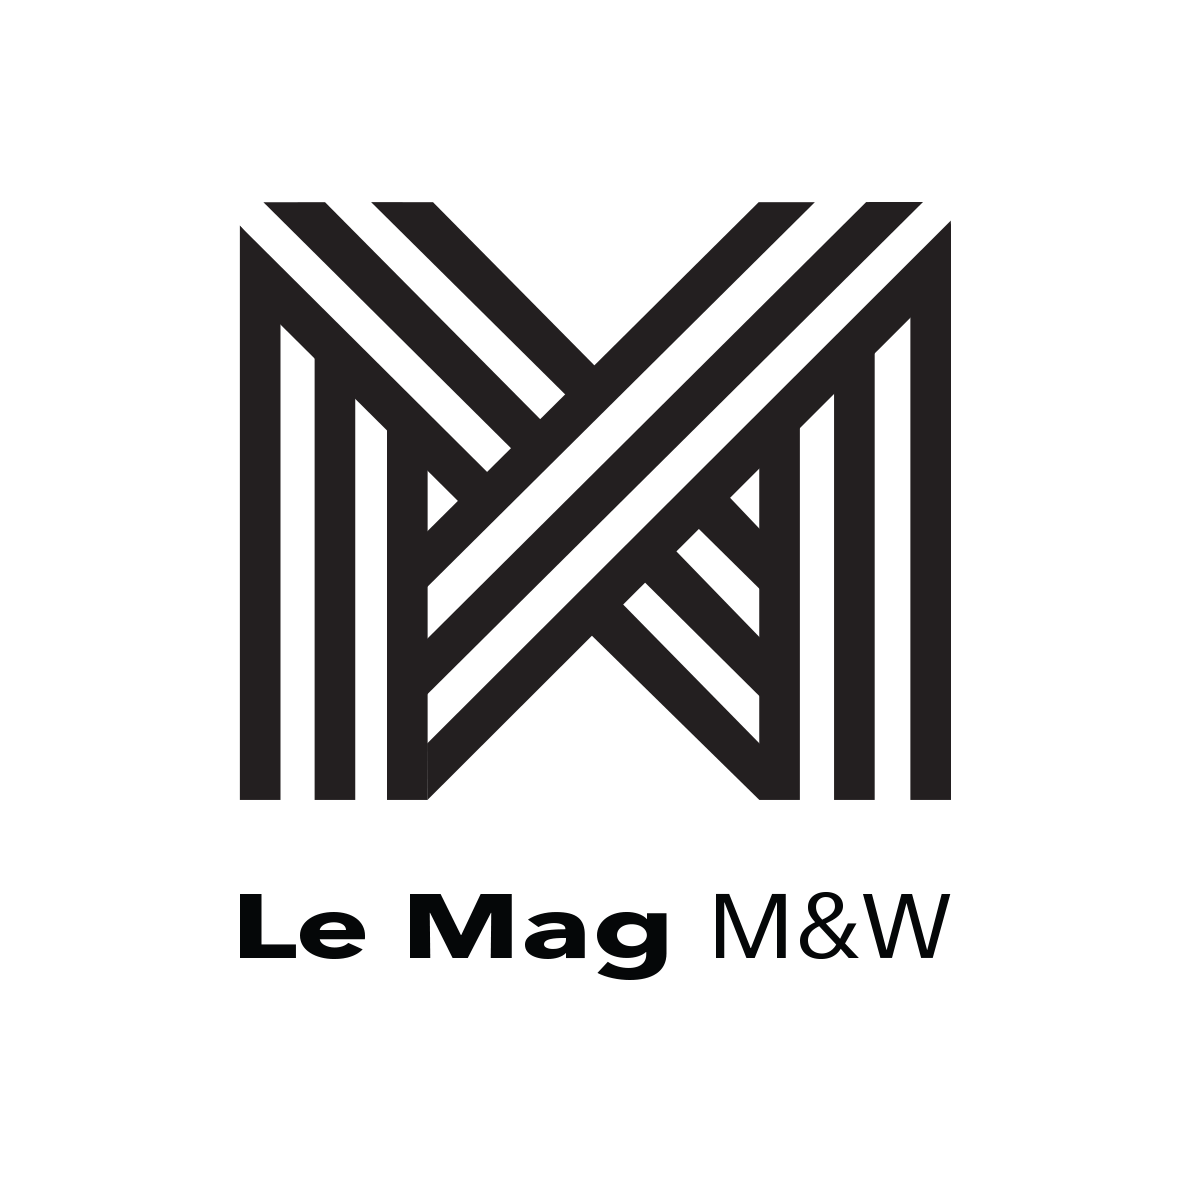 Le Mag M&W